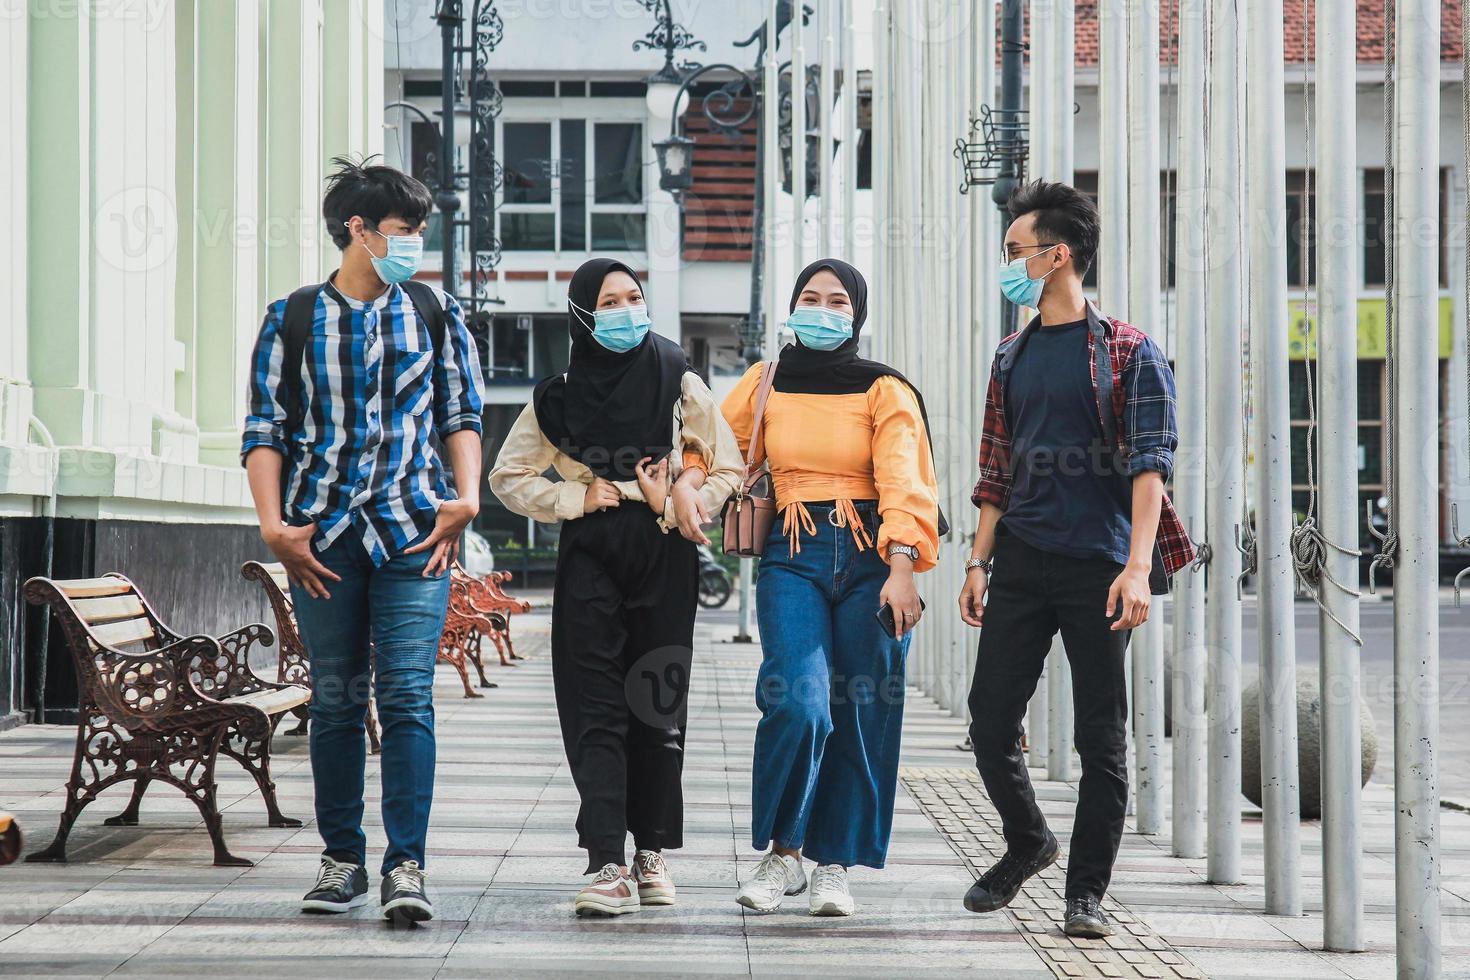 jonge millennials vrienden wandelen in het oude stadscentrum van de stad - gelukkige mensen die samen plezier hebben - jeugdlevensstijl, vriendschapsconcept foto